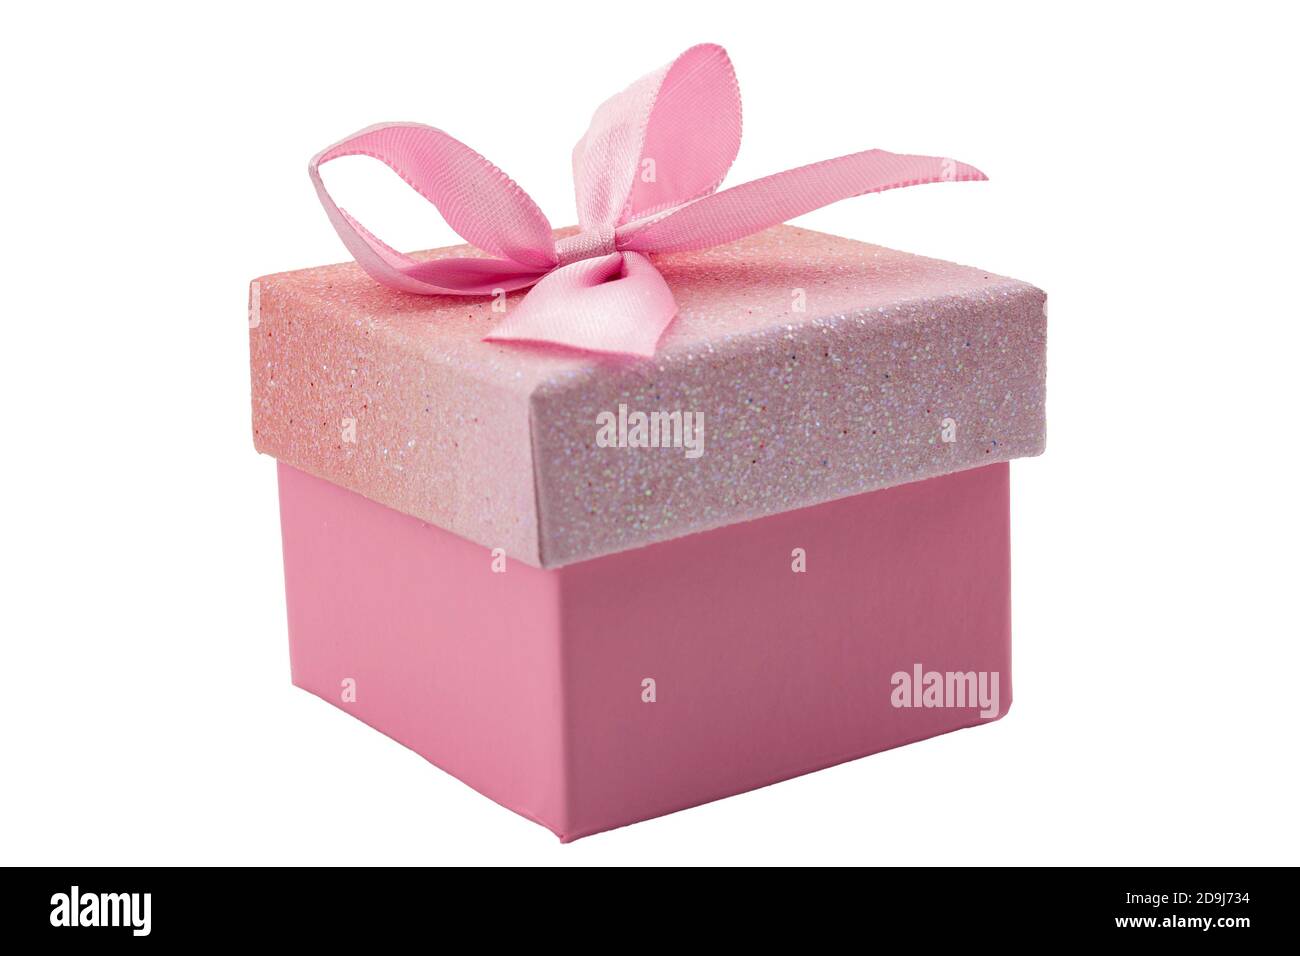 Cadeau spécial, cadeaux de luxe et cadeaux de réception concept avec boîte cadeau ornée avec ruban rose et noeud isolé sur le dos blanc Banque D'Images